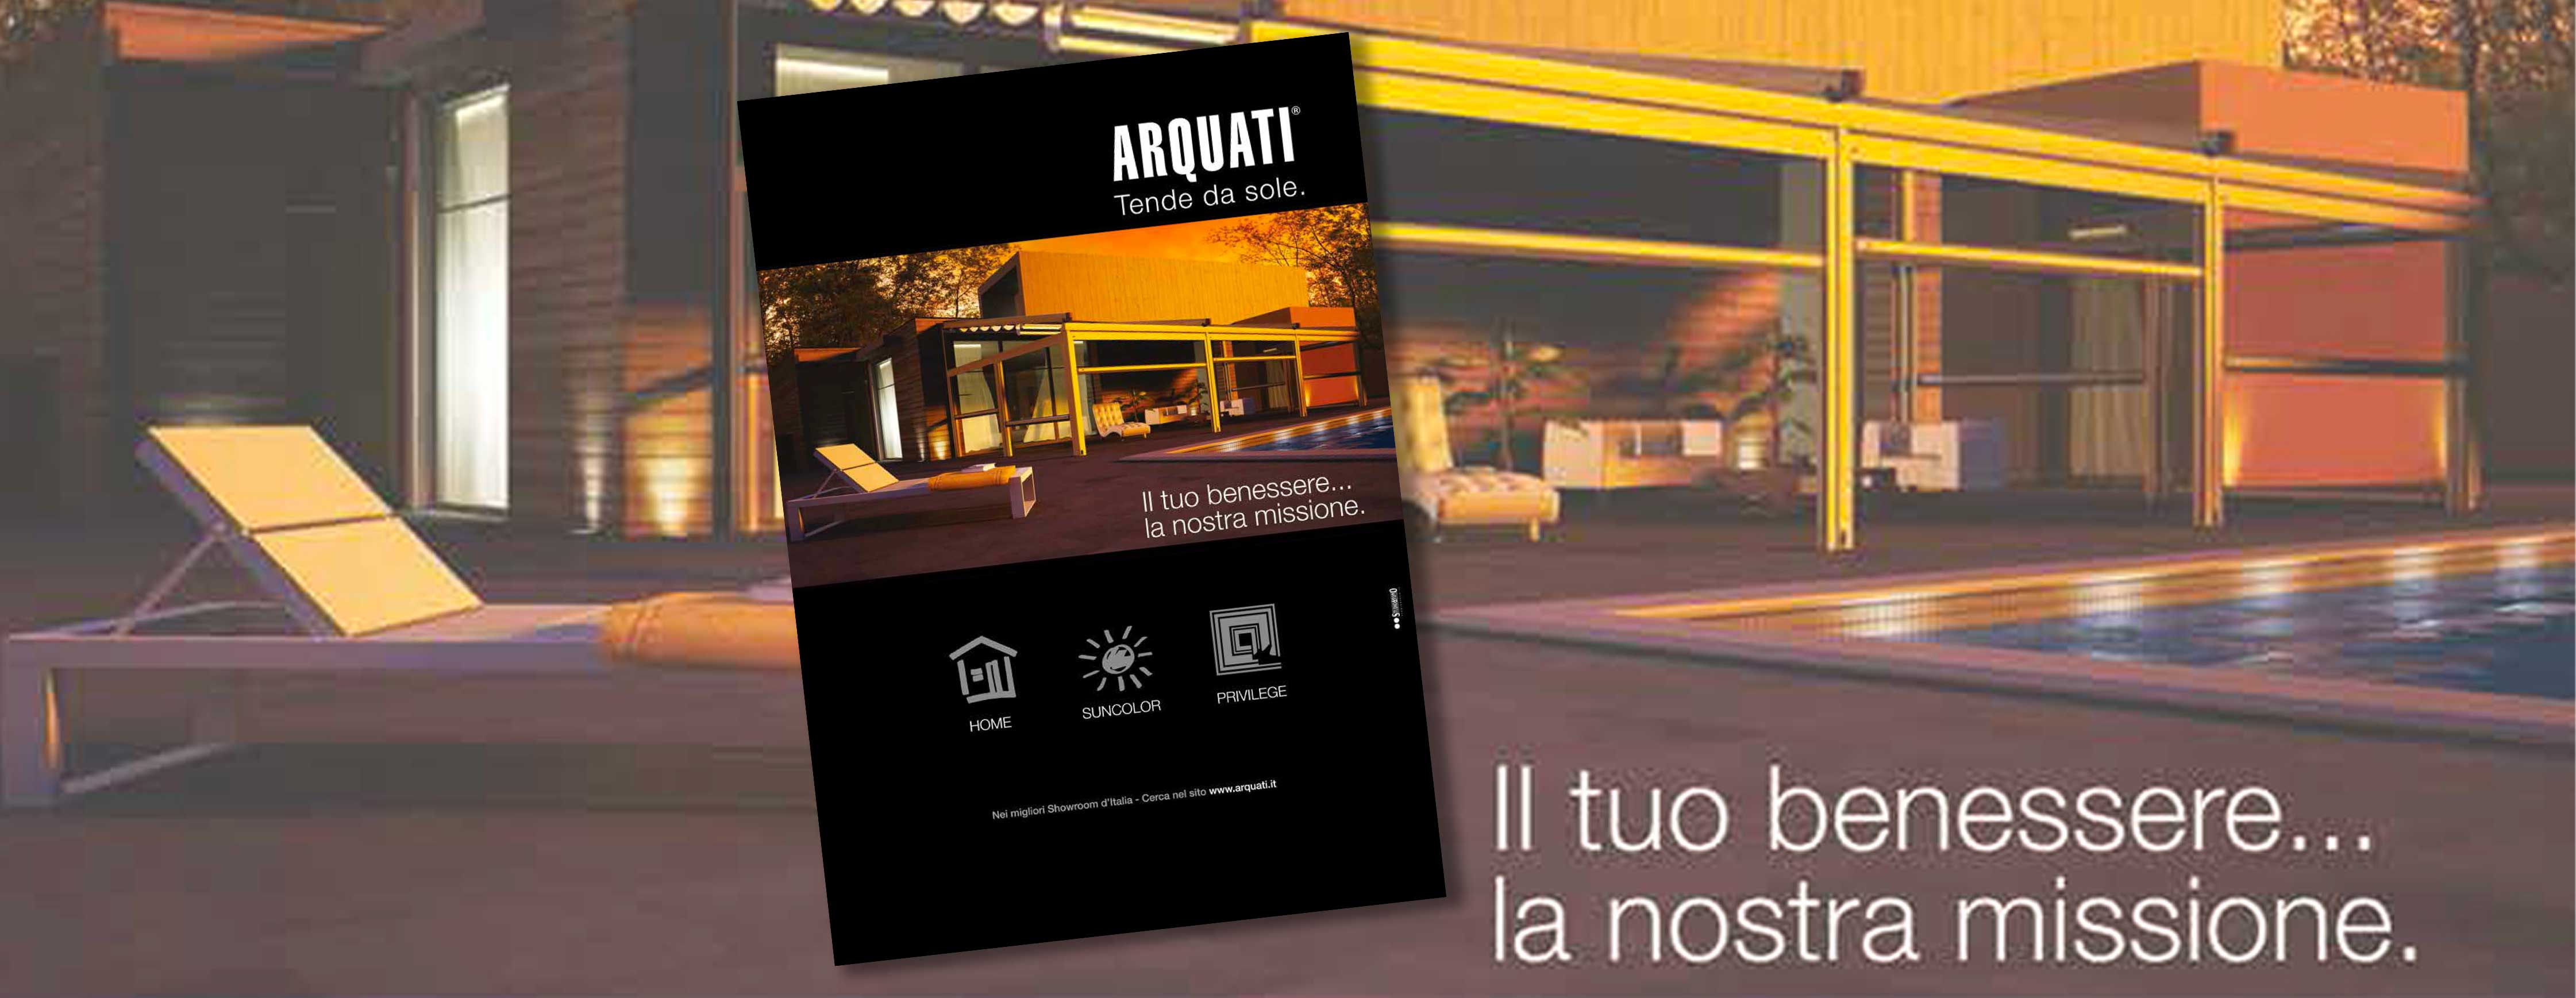 Advertising_arquati